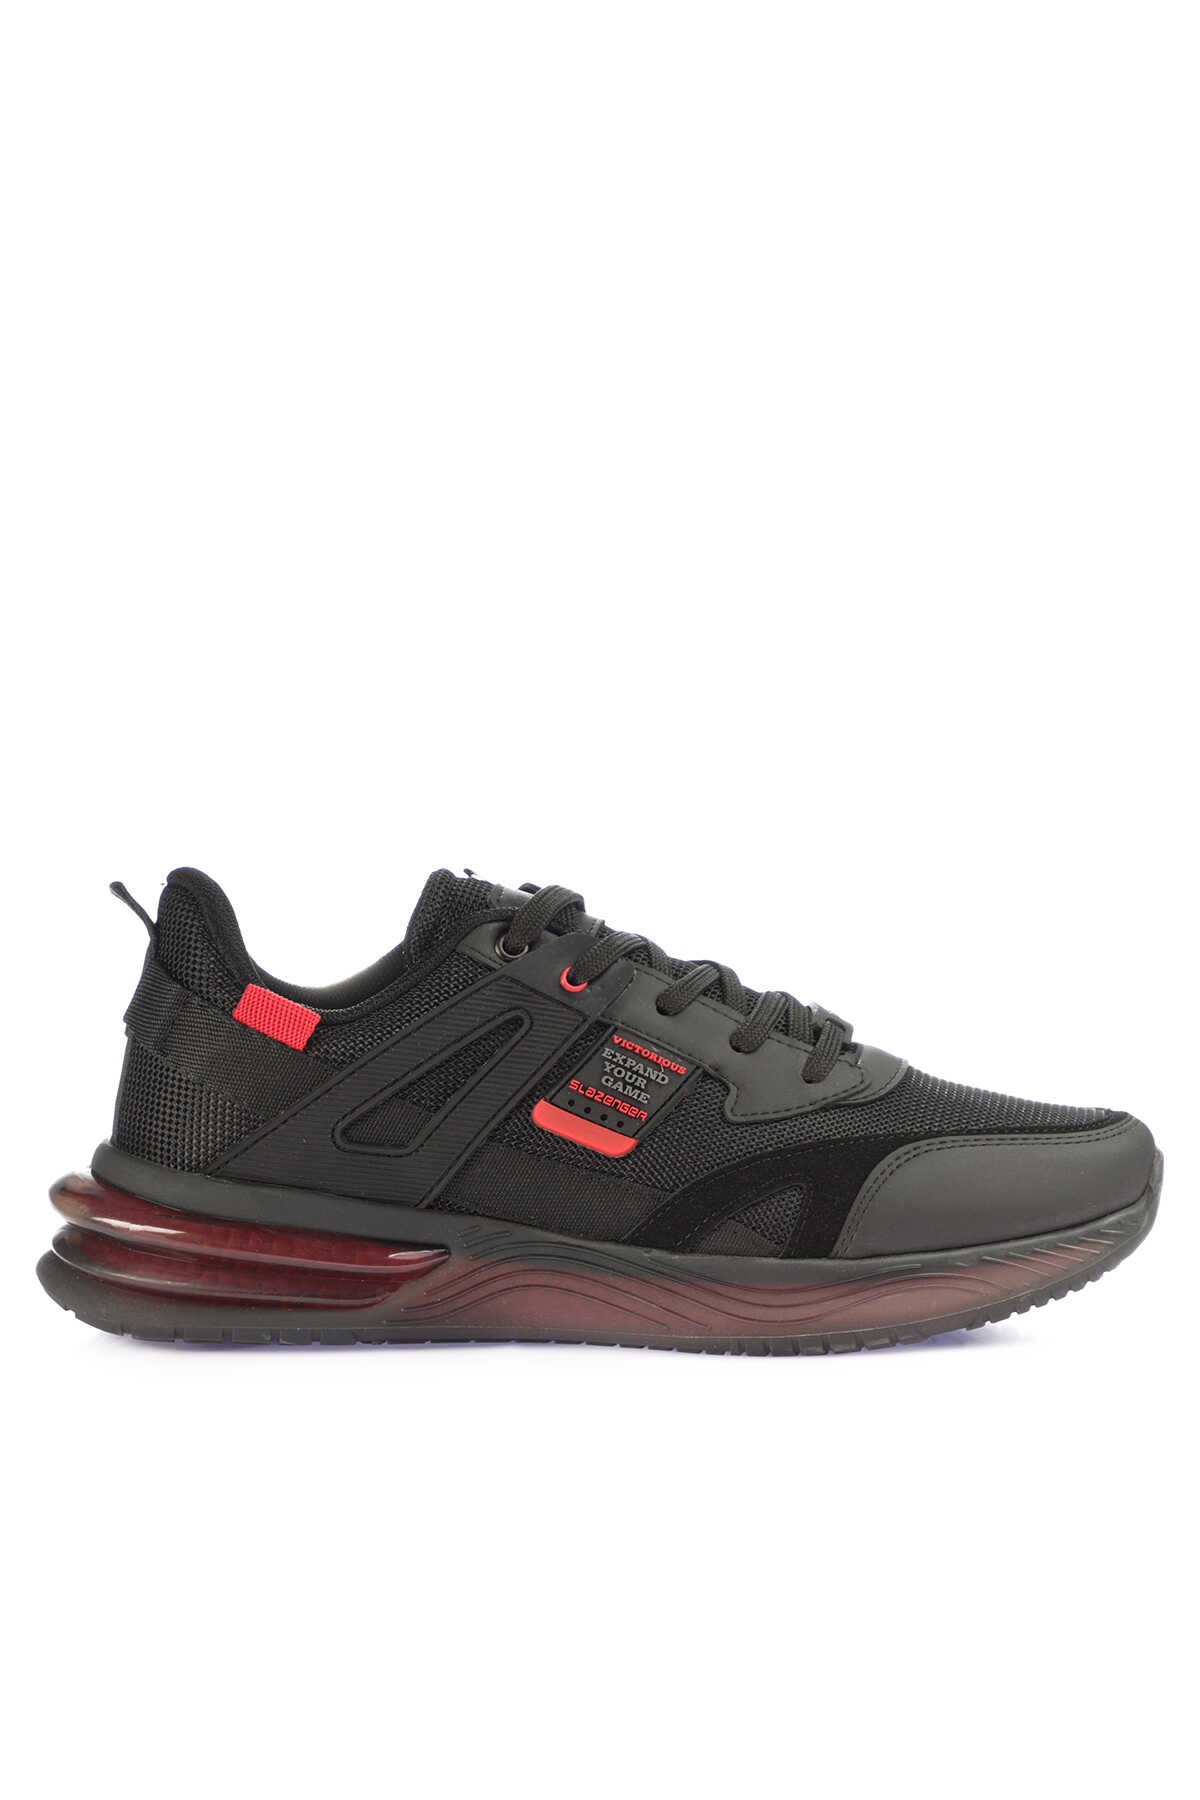 Slazenger - Slazenger ZEND Sneaker Erkek Ayakkabı Siyah / Kırmızı